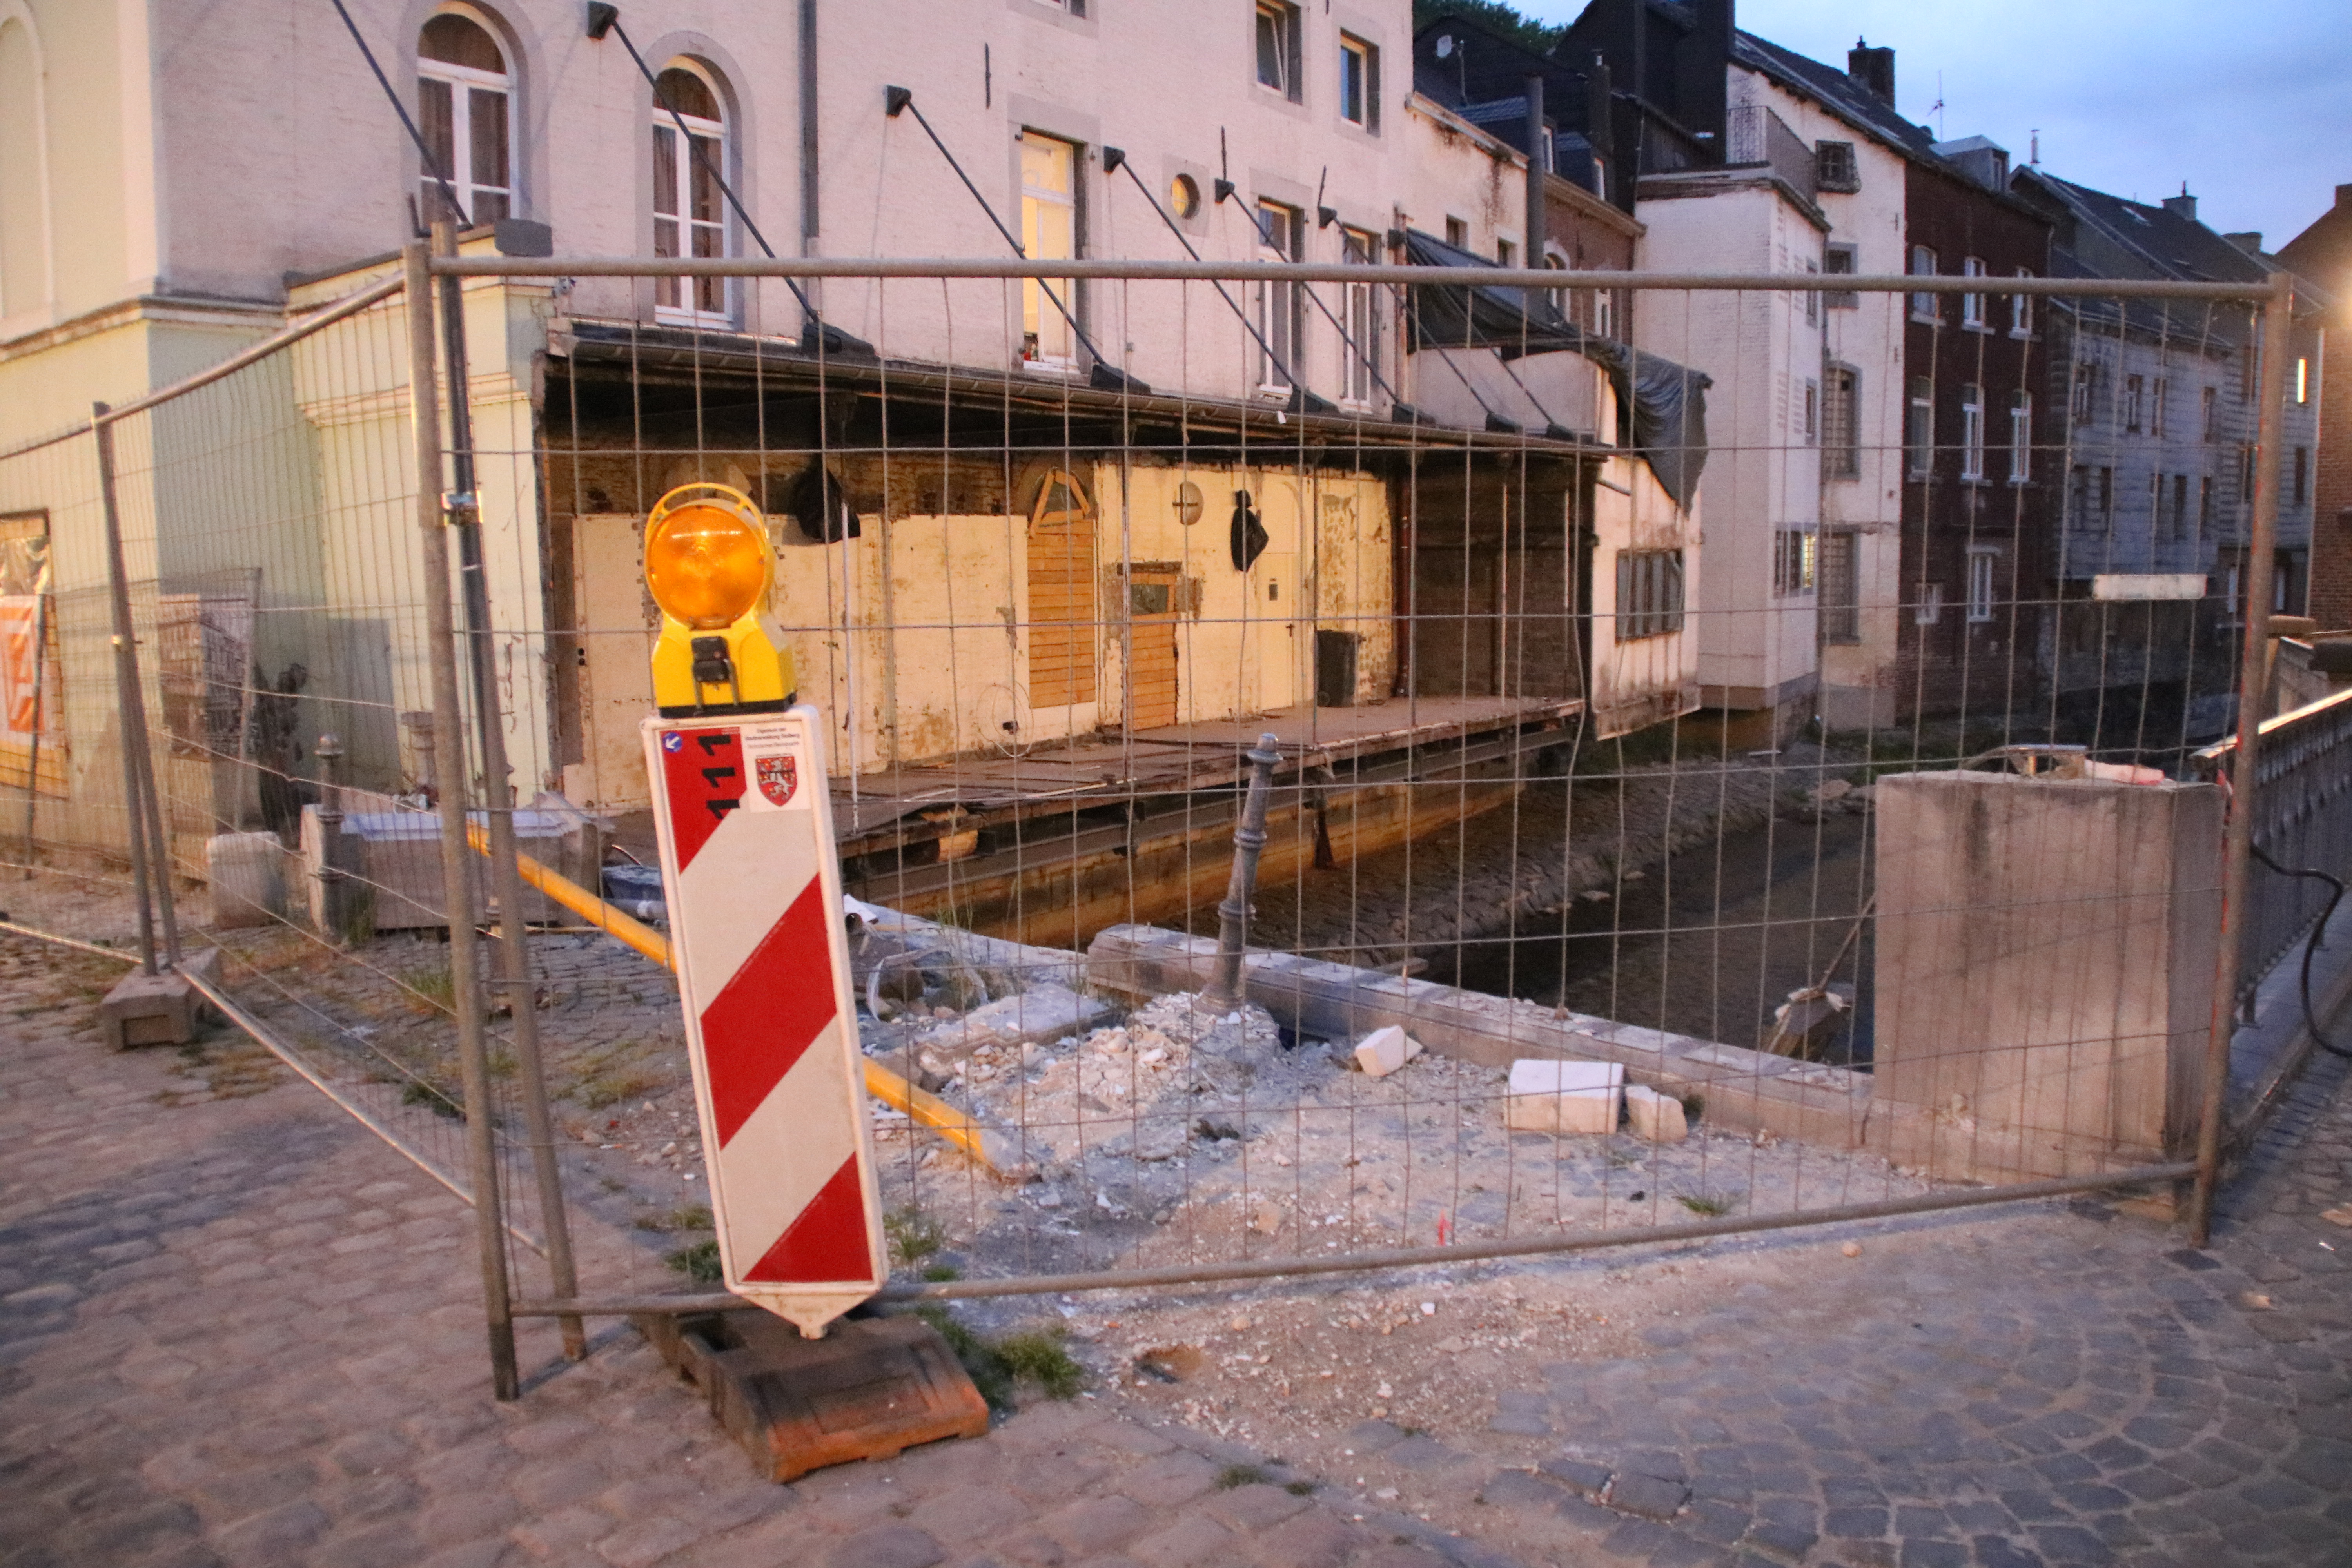 Innenstadt Stolbergs, ein Ort in Nordrhein-Westfalen. Das Gelände ist von Bauzäunen umschlossen.